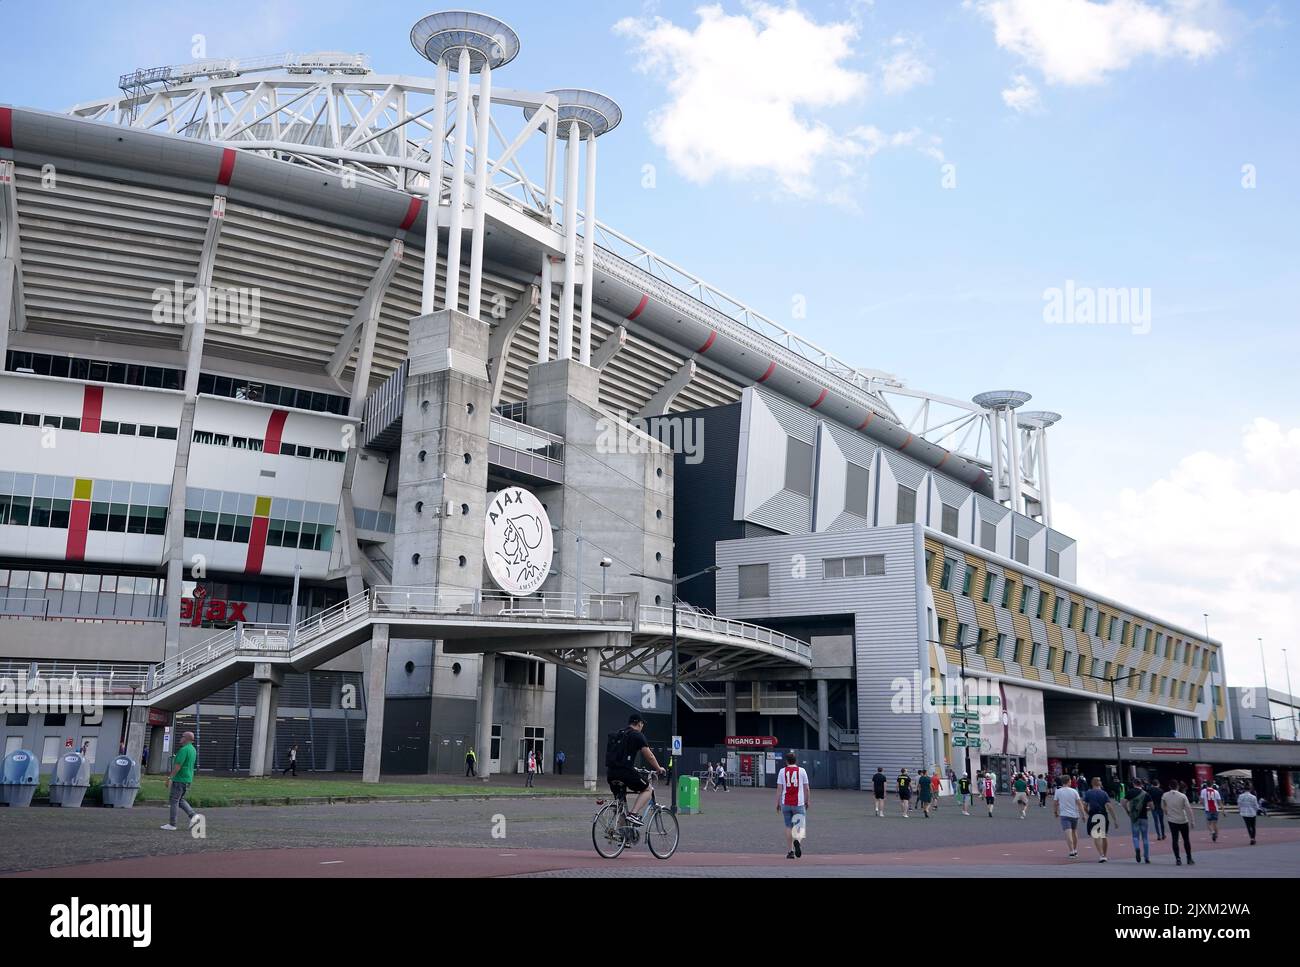 Gesamtansicht vor dem Spiel der UEFA Champions League Gruppe F in der Johan Cruyff Arena in Amsterdam, Niederlande. Bilddatum: Mittwoch, 7. September 2022. Stockfoto